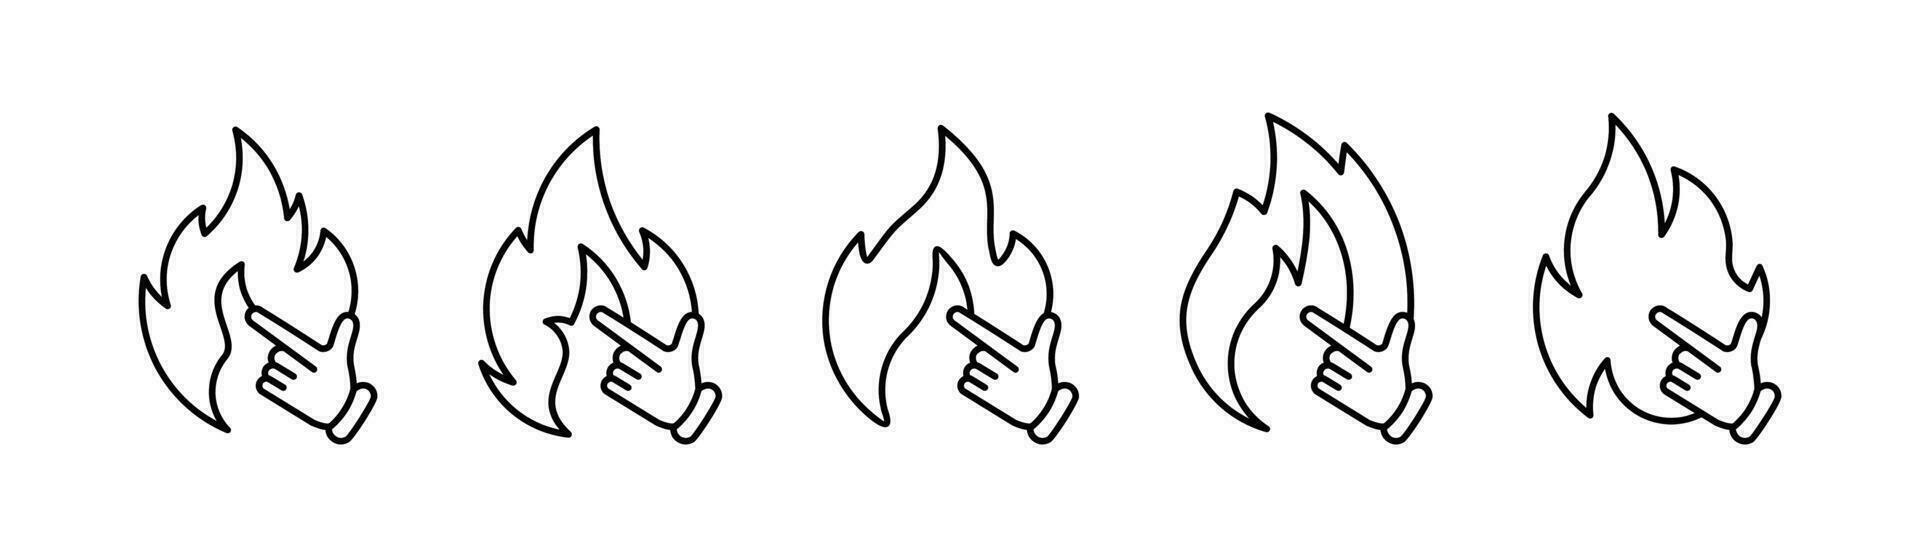 vlam van divers vormen vreugdevuur vector illustratie achtergrond Wit vuur vlak lijn pictogrammen reeks